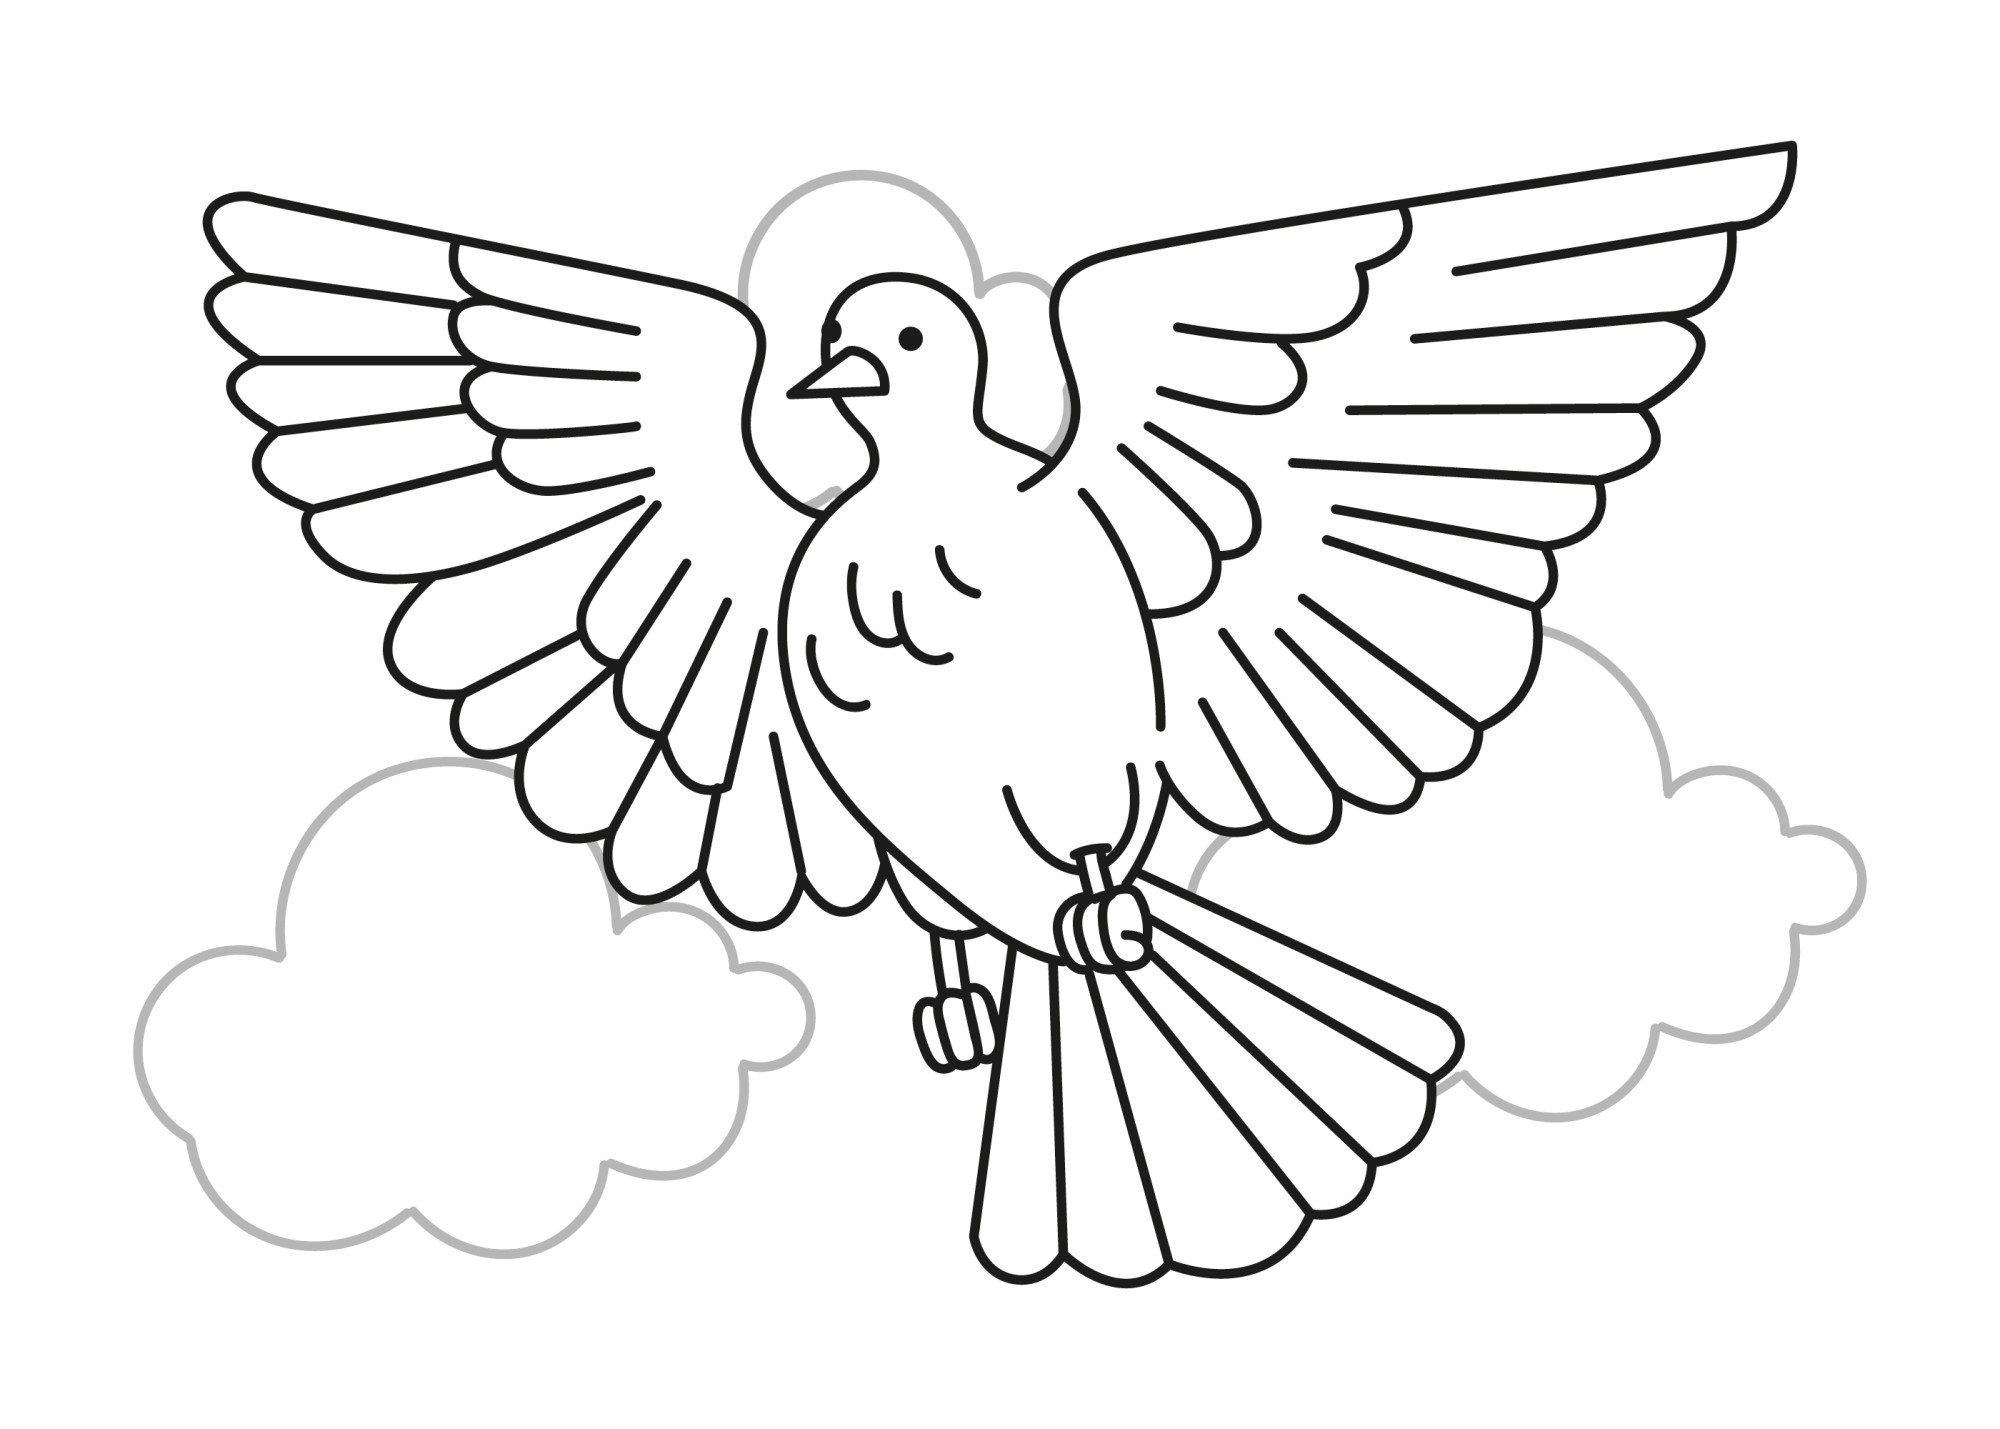 Раскраска для детей: контур голубя в небе